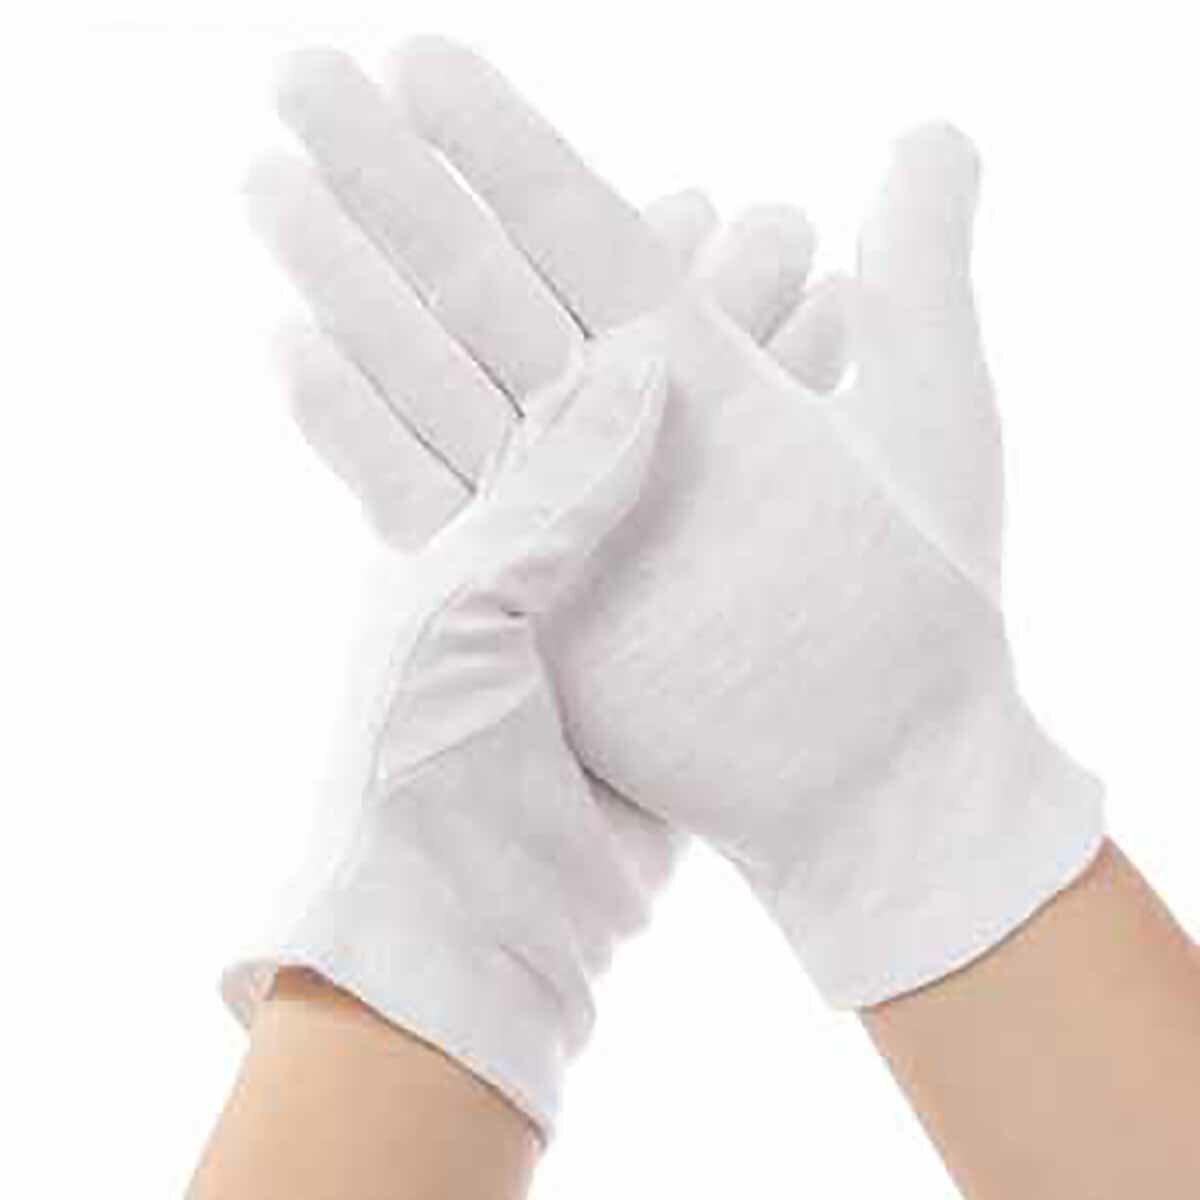 12 ζευγάρια μίας χρήσης λευκό γάντι μαλακό βαμβάκι ασφαλείας ανθεκτικό στο λάδι κάμπινγκ πικ-νικ